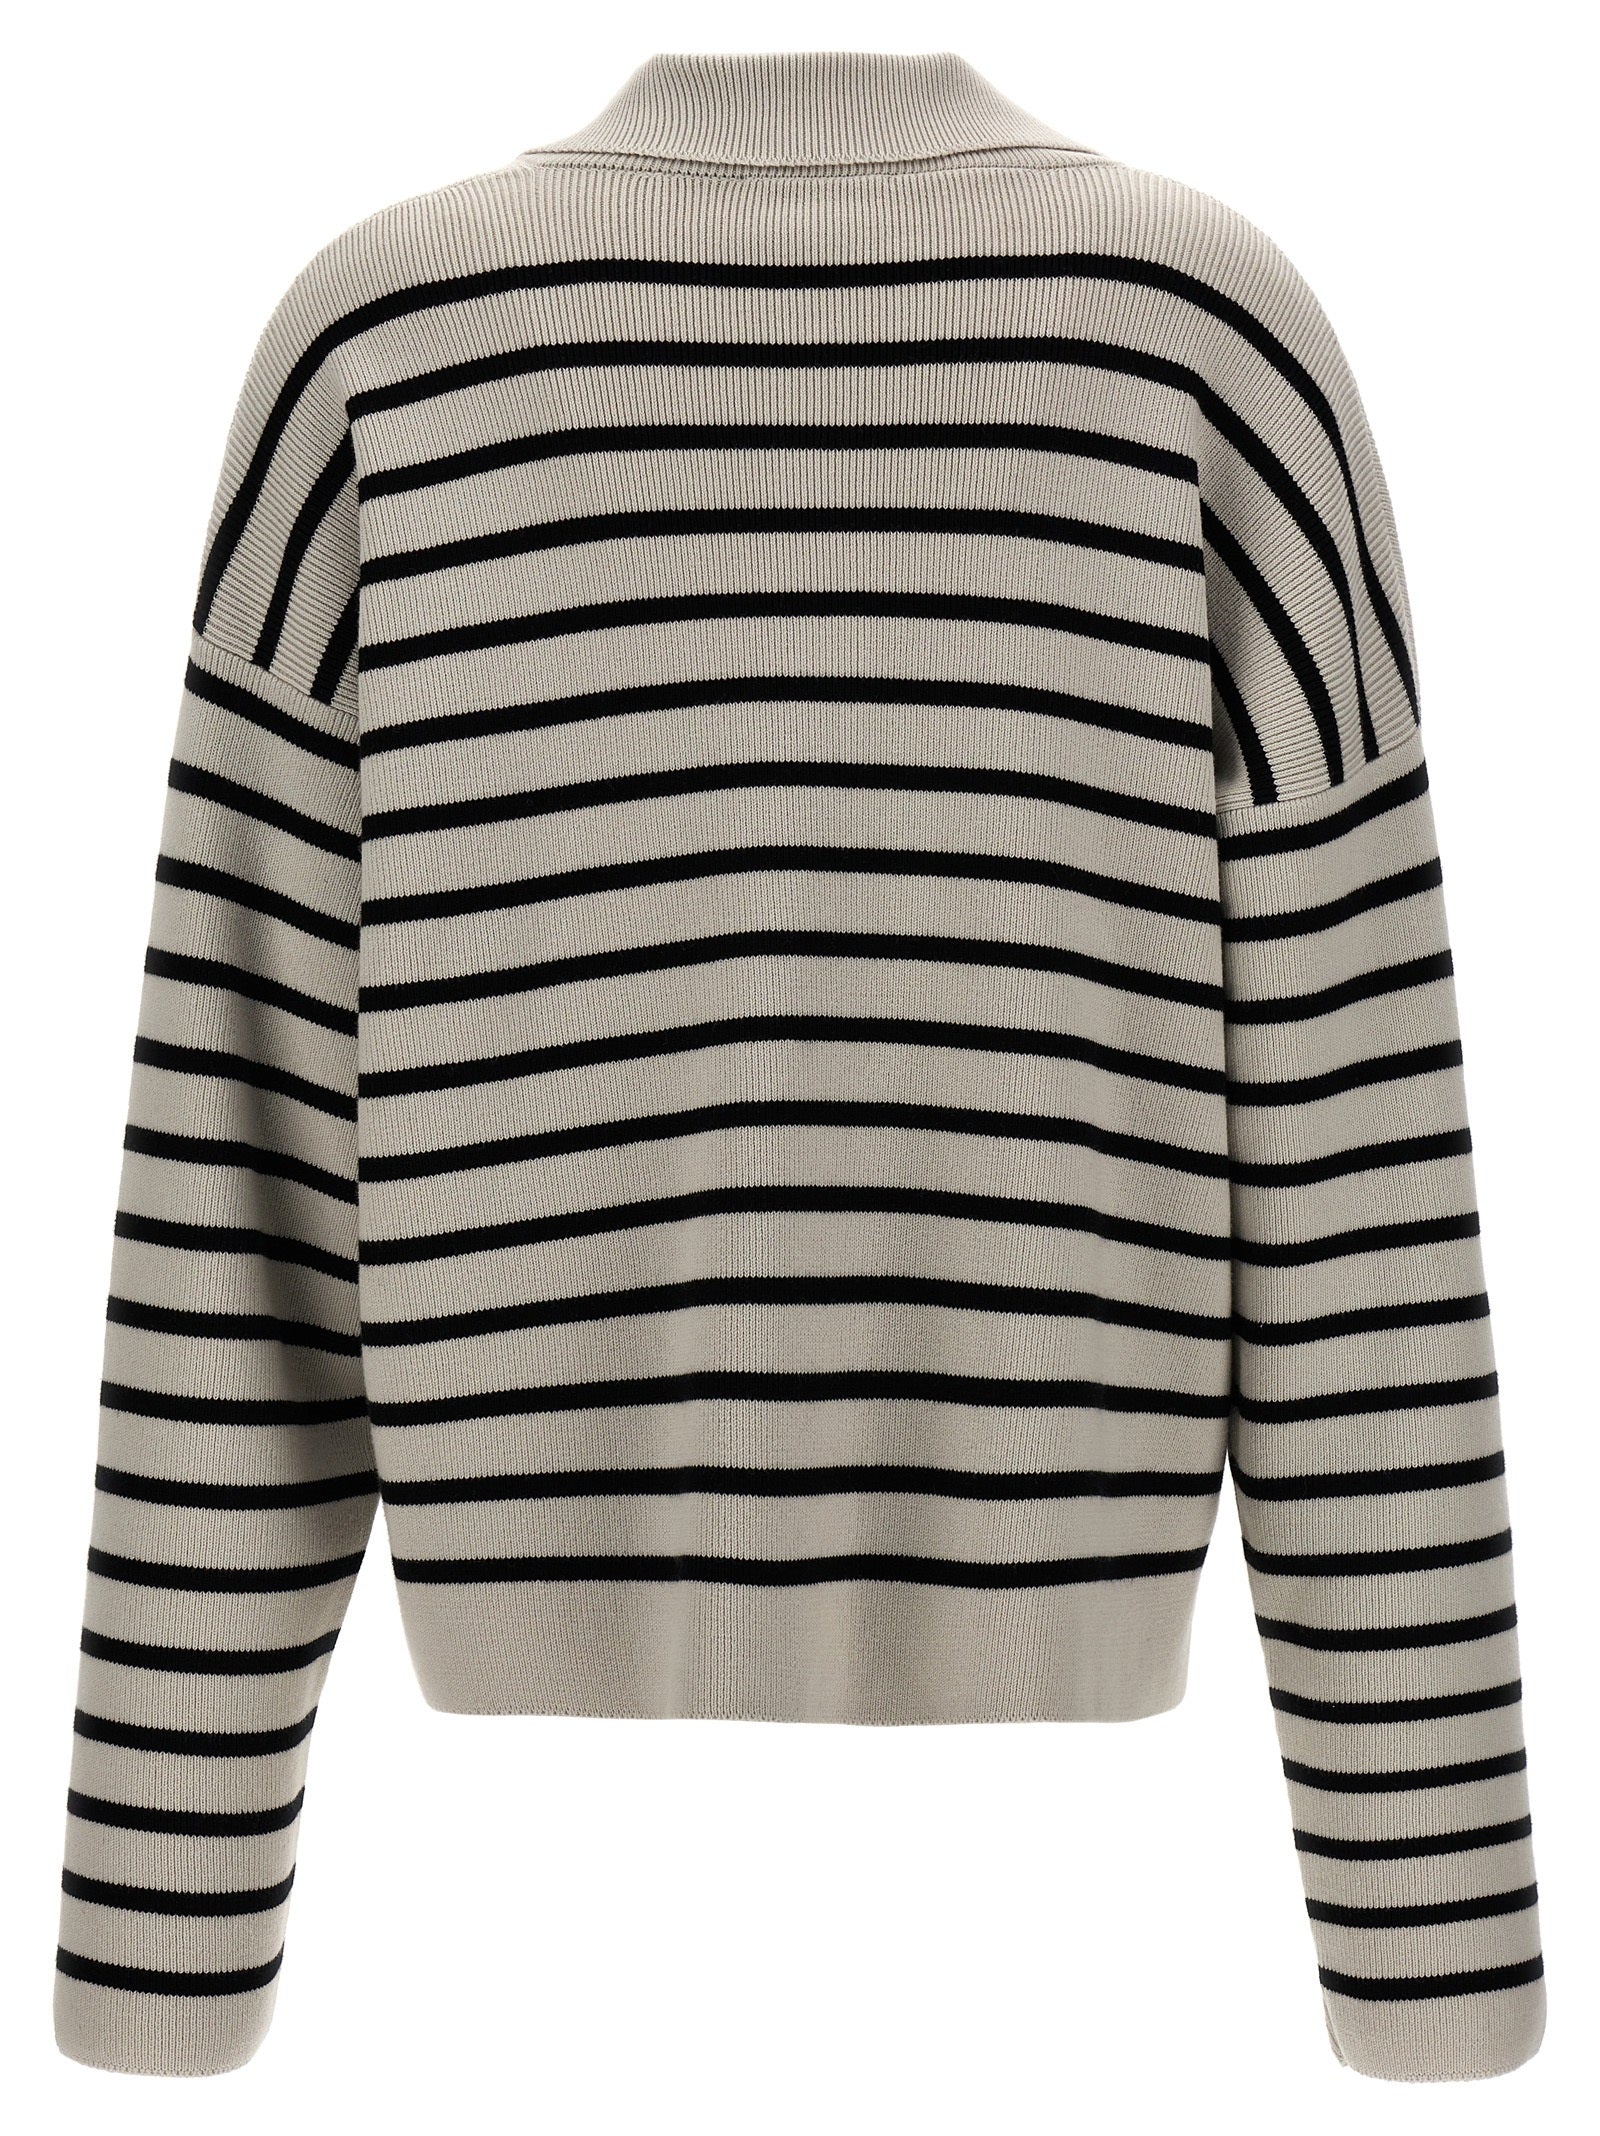 Shop Ami Alexandre Mattiussi Striped Polo Sweater Sweater, Cardigans White/black